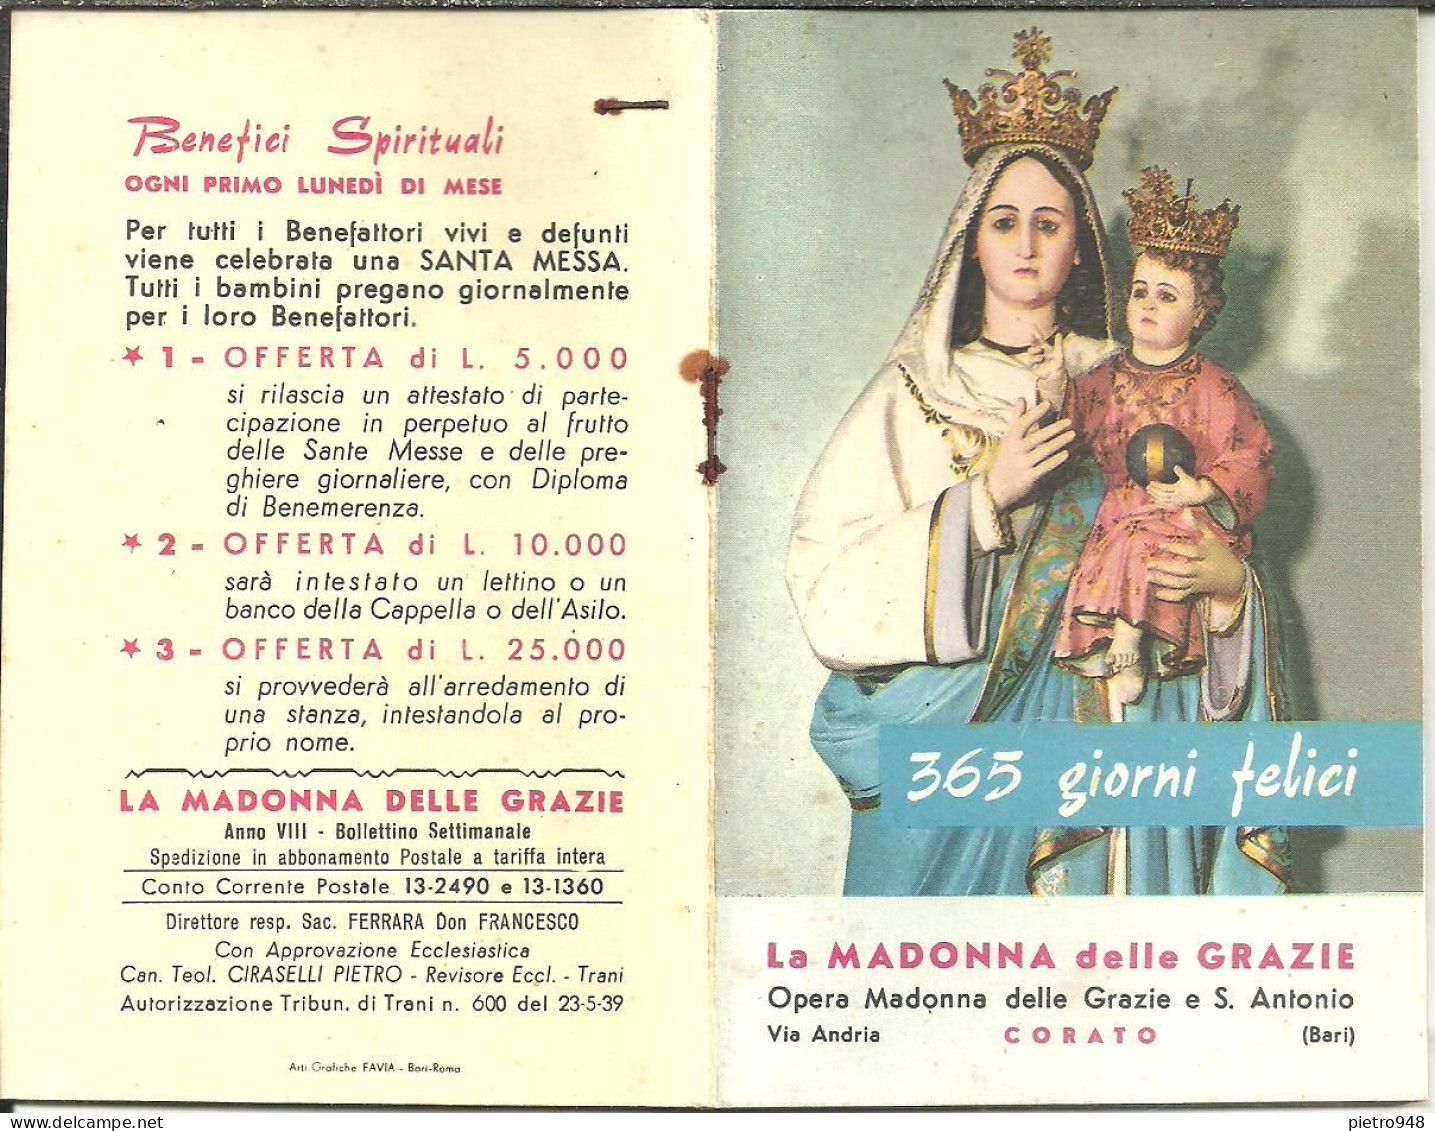 Libro (Libretto) Religioso "Opera Madonna Delle Grazie E Sant'Antonio" Corato (Bari), Agendina 1966 - Religión/Espiritualismo